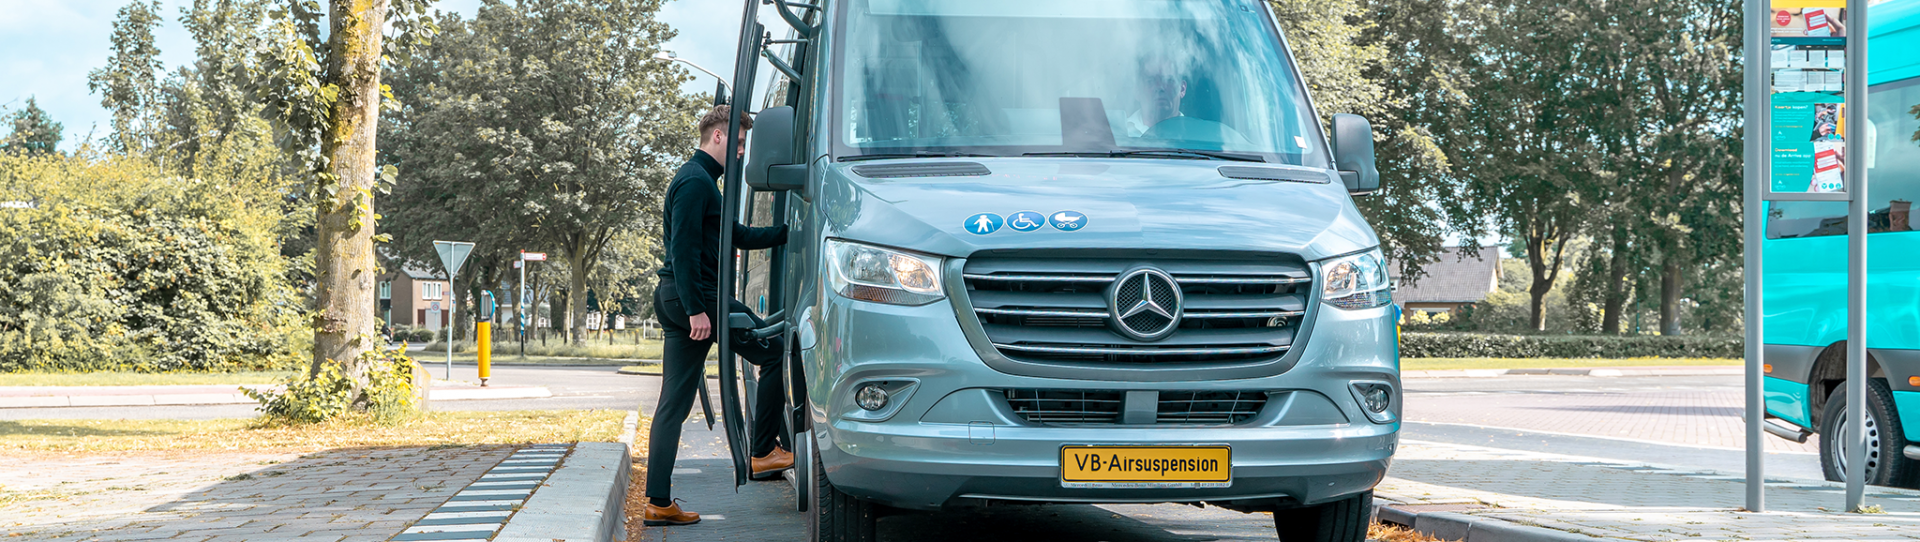 Foto: Mercedes-Benz Sprinter Minibus an der Bushaltestelle